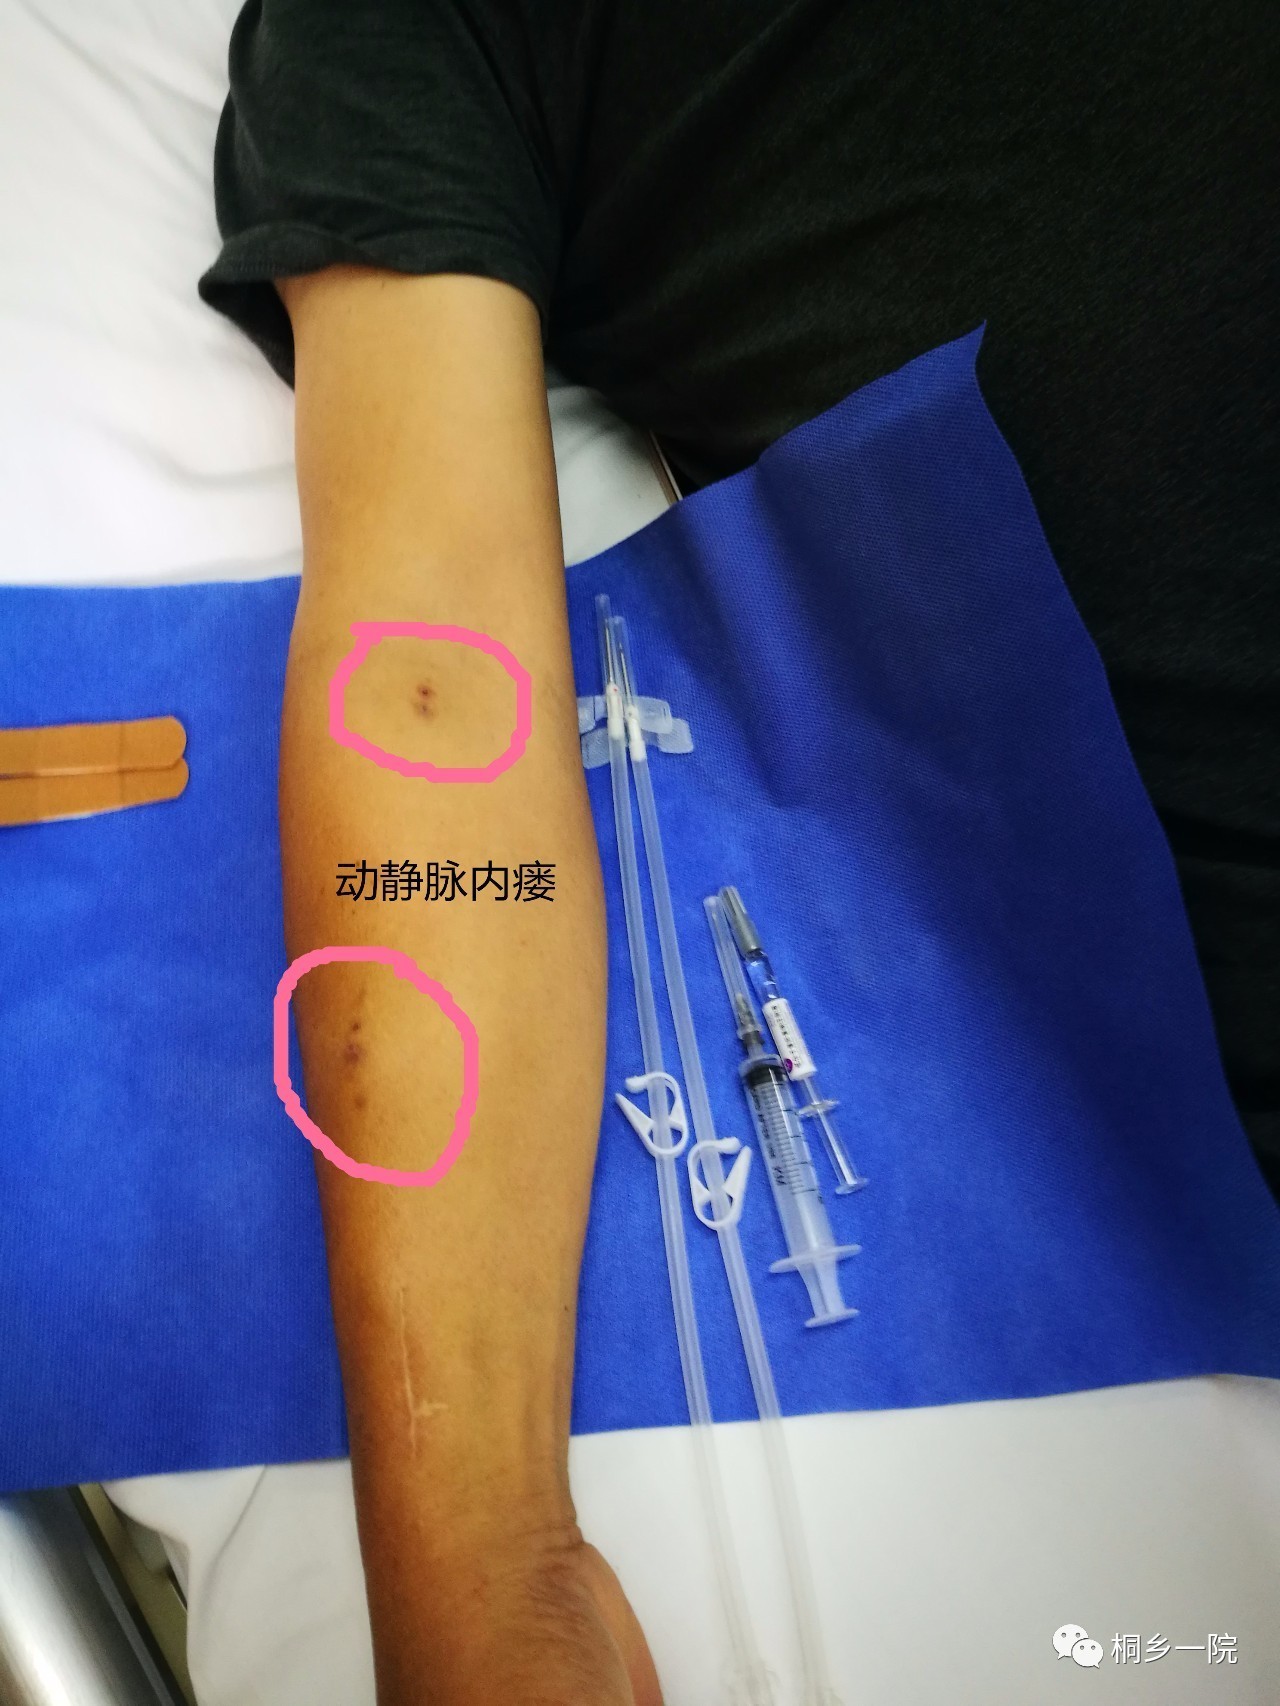 正文答案来了,最左边那个巨大的针头,就是血透患者的专用针头,有16号